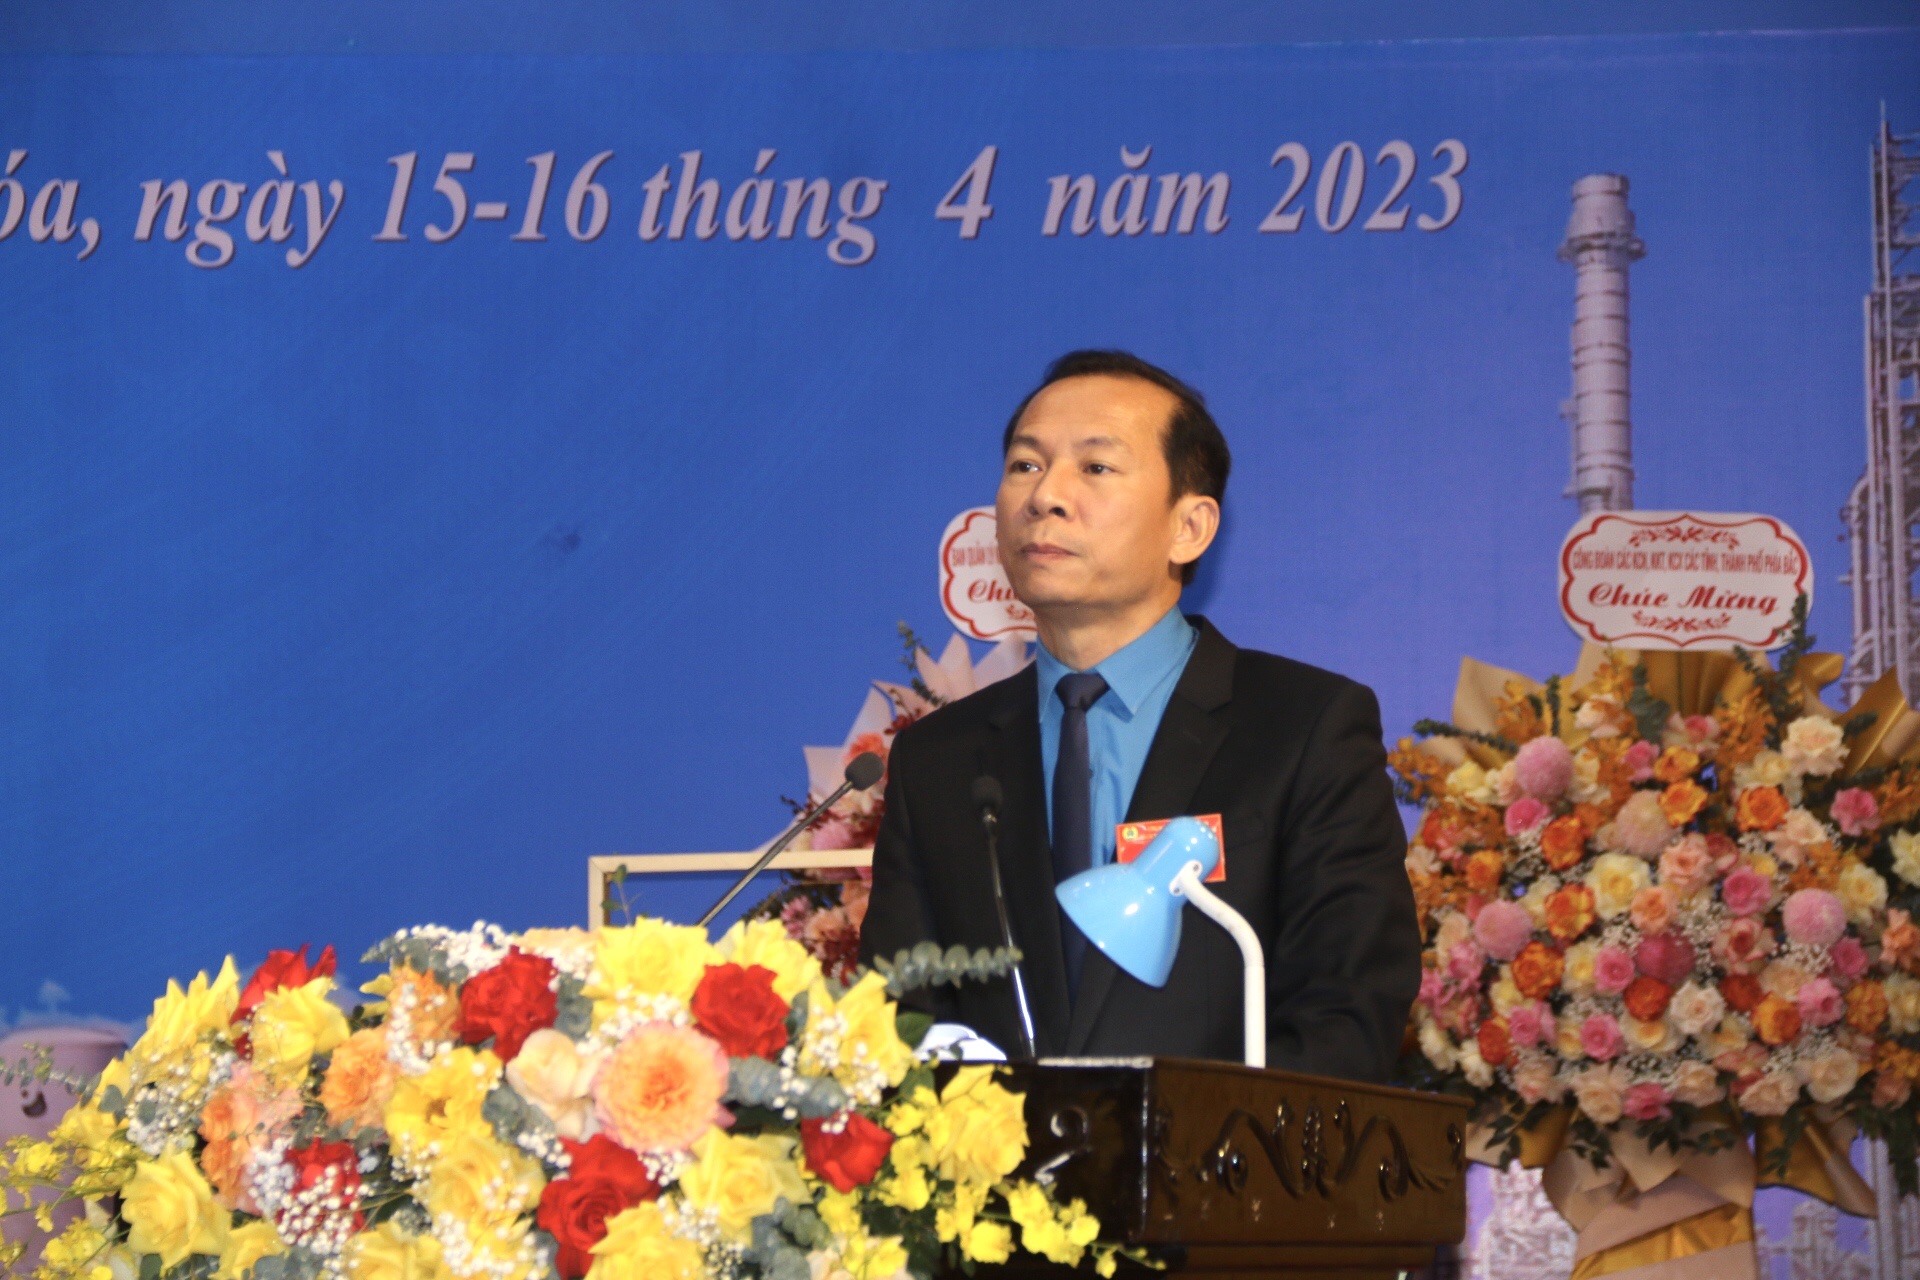 Đồng chí Võ Mạnh Sơn - Chủ tịch LĐLĐ tỉnh Thanh Hóa phát biểu chỉ đạo đại hội. Ảnh: Quách Du